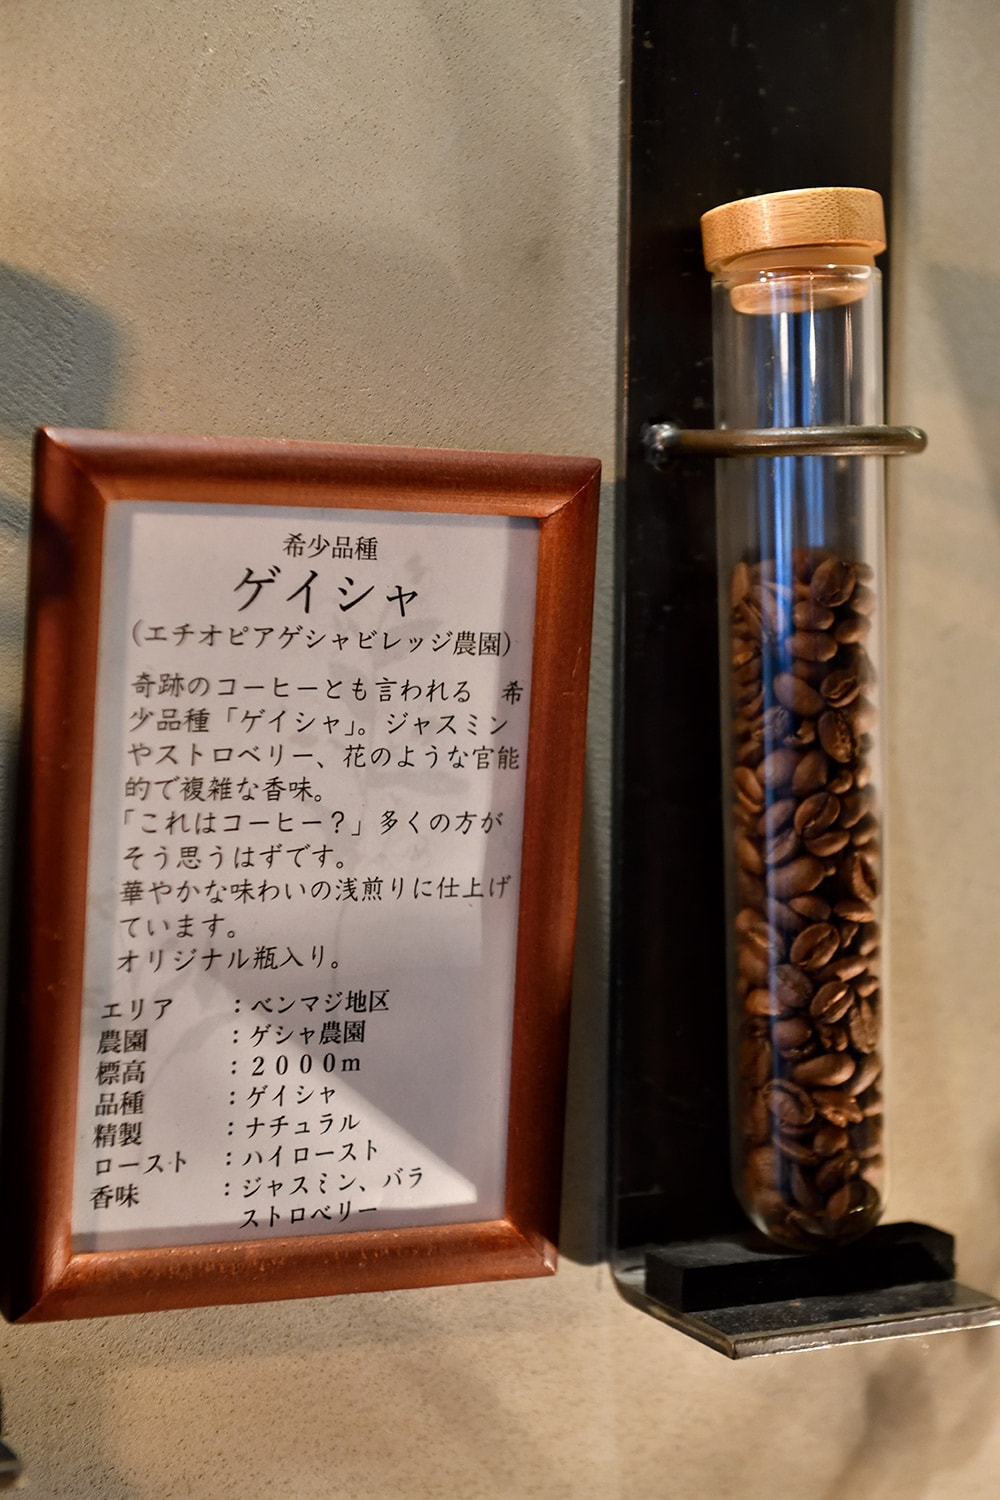 希少な“ゲイシャ”は瓶入りで100g 3,980円。